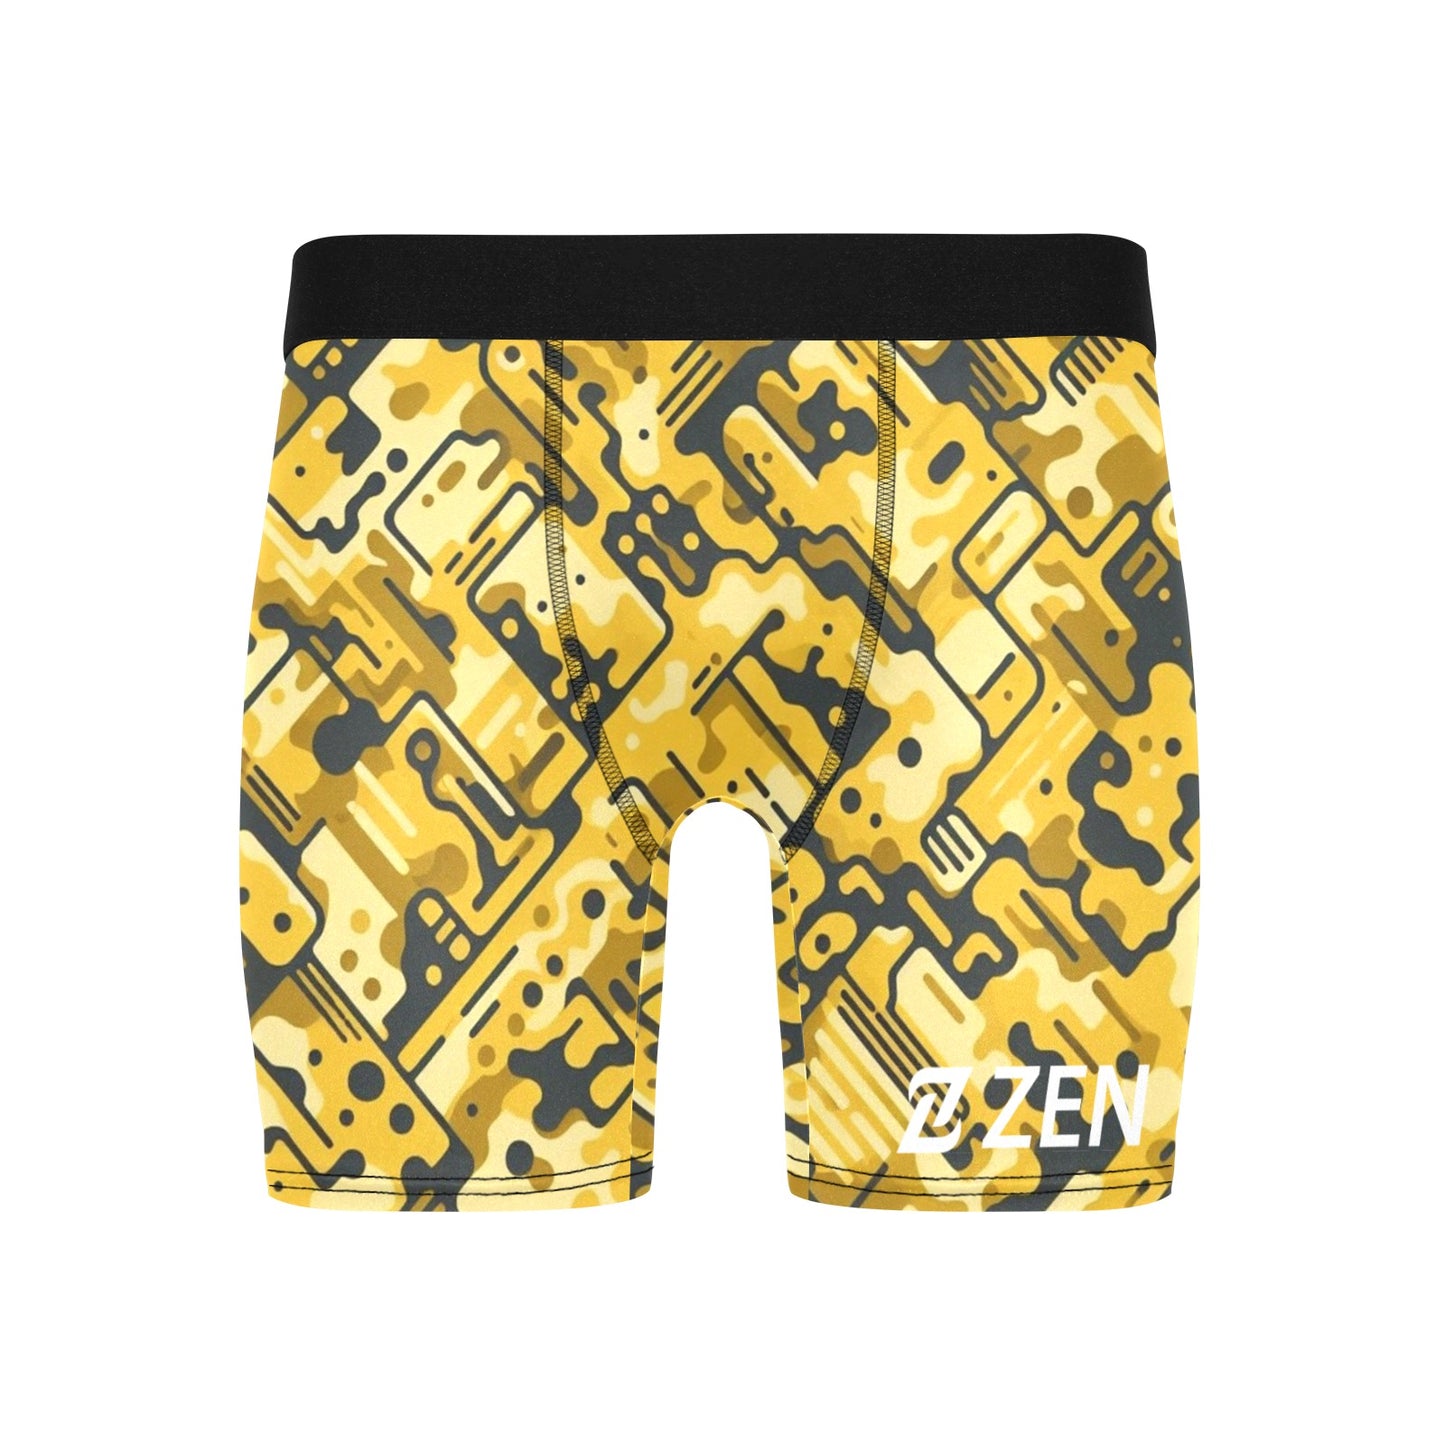 Zen Boxers Long - Yellow Camo